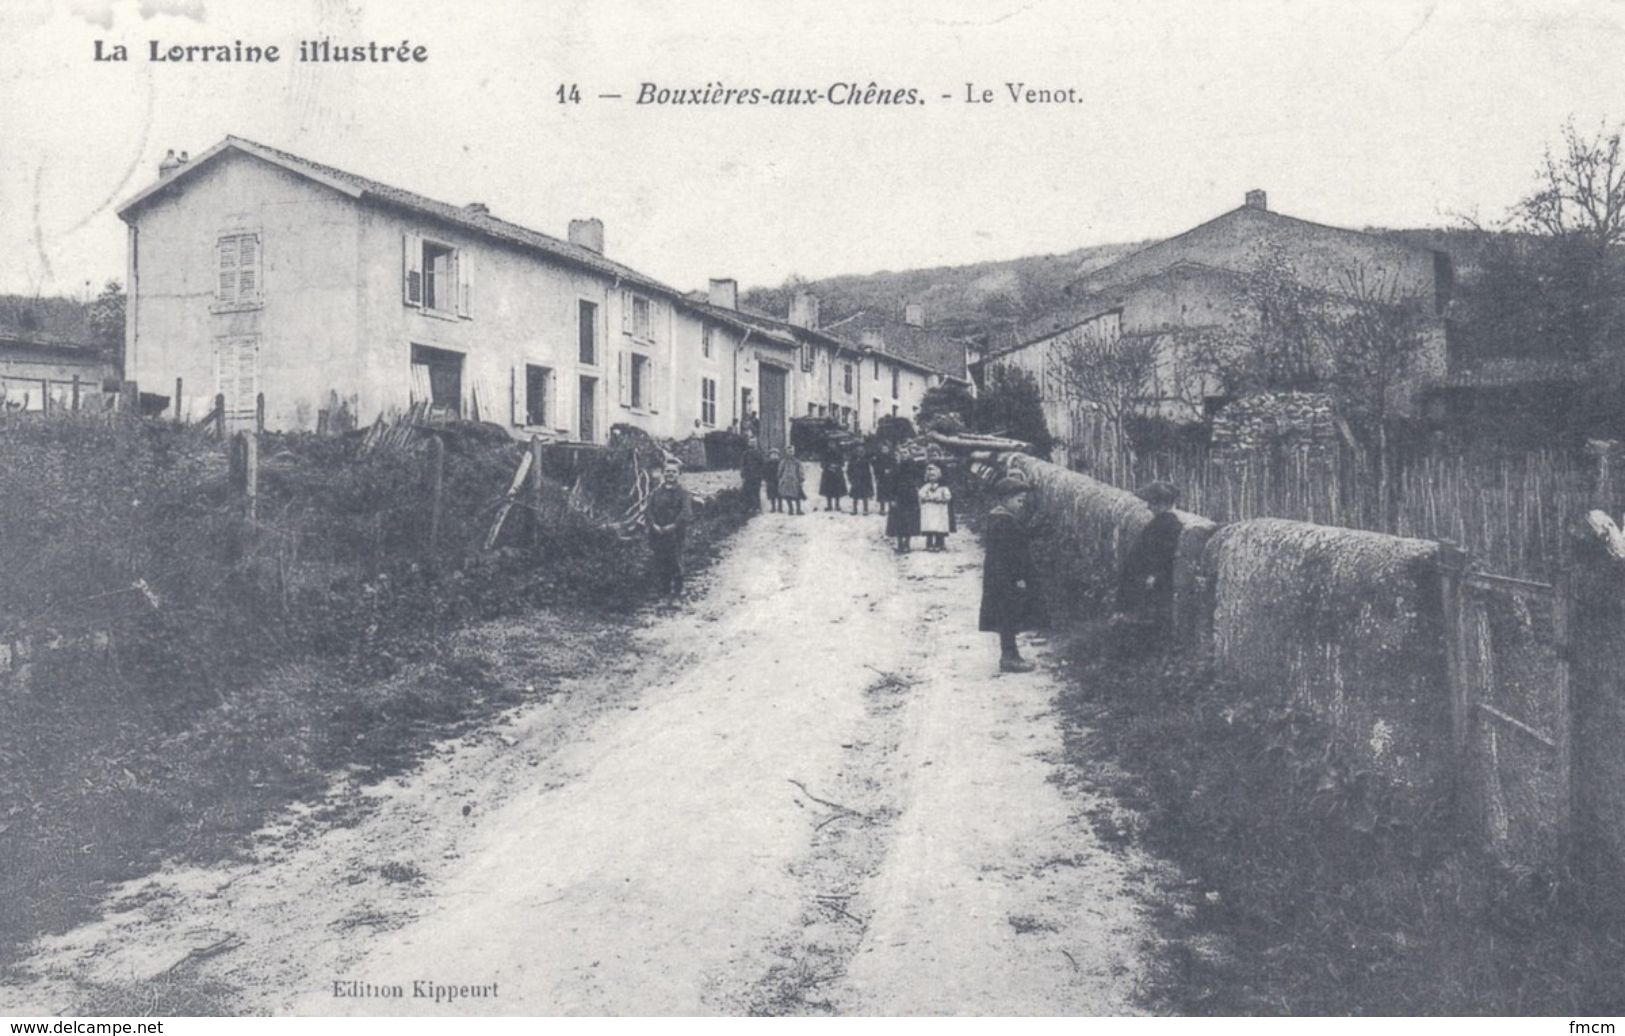 Bouxières-aux-Chênes, ensemble de 17 fac-similés édités en 1993